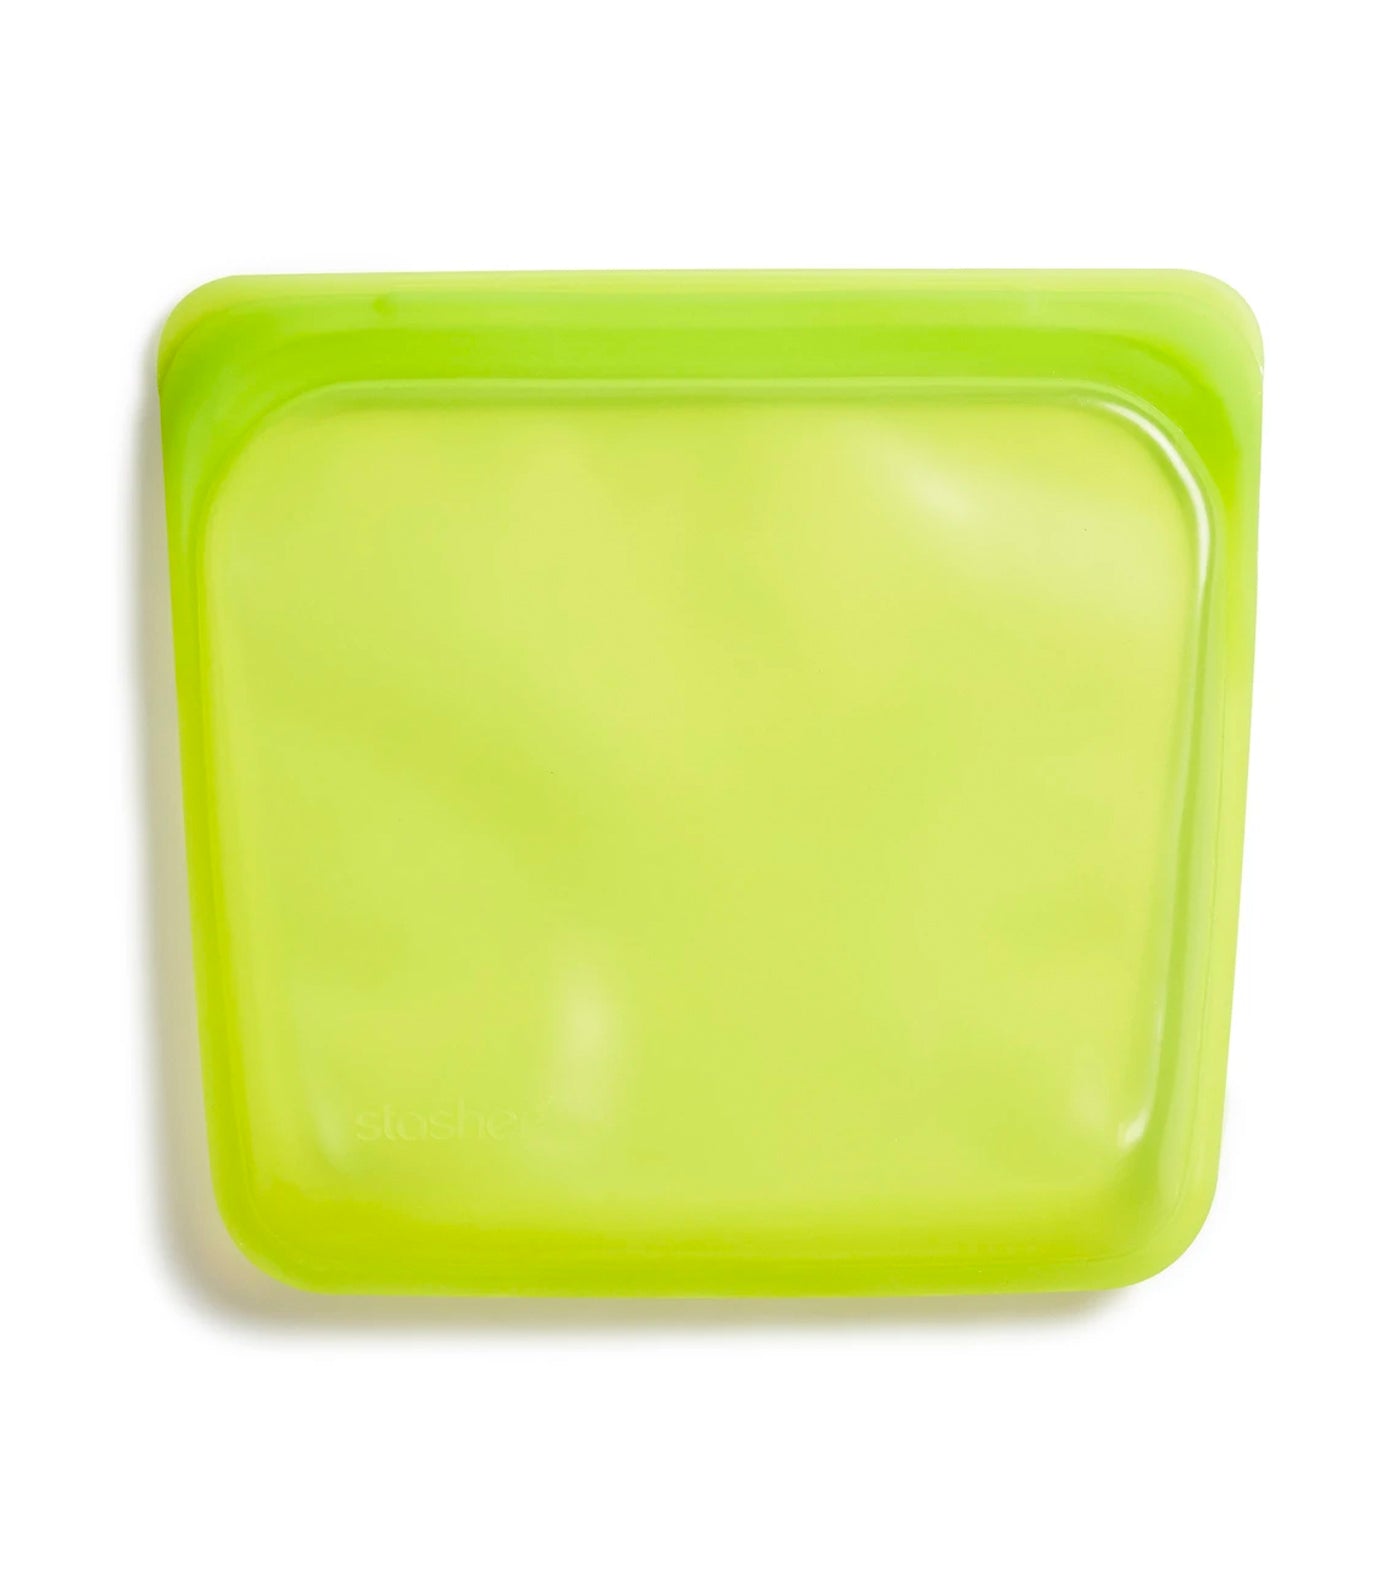 Stasher Reusable Silicone Sandwich Bag - Lime